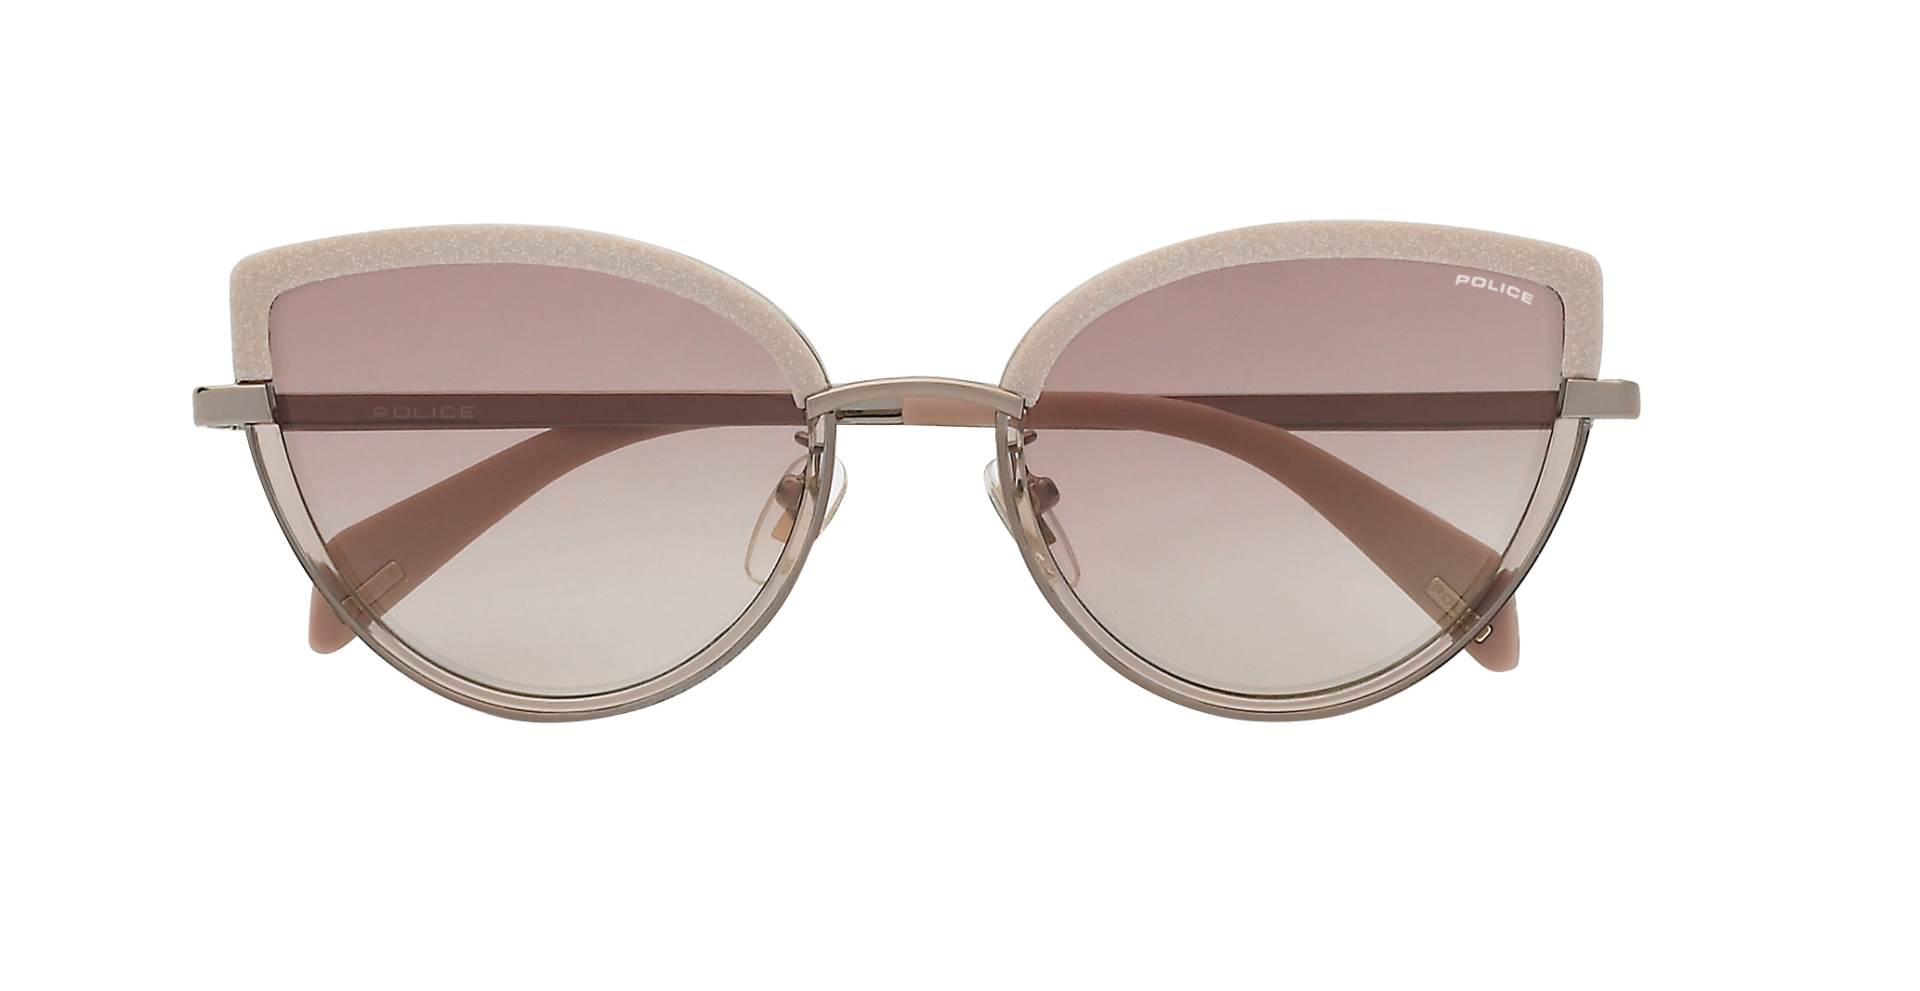 Talijanska modna tvrtka opet zablistala novom kolekcijom sunčanih naočala